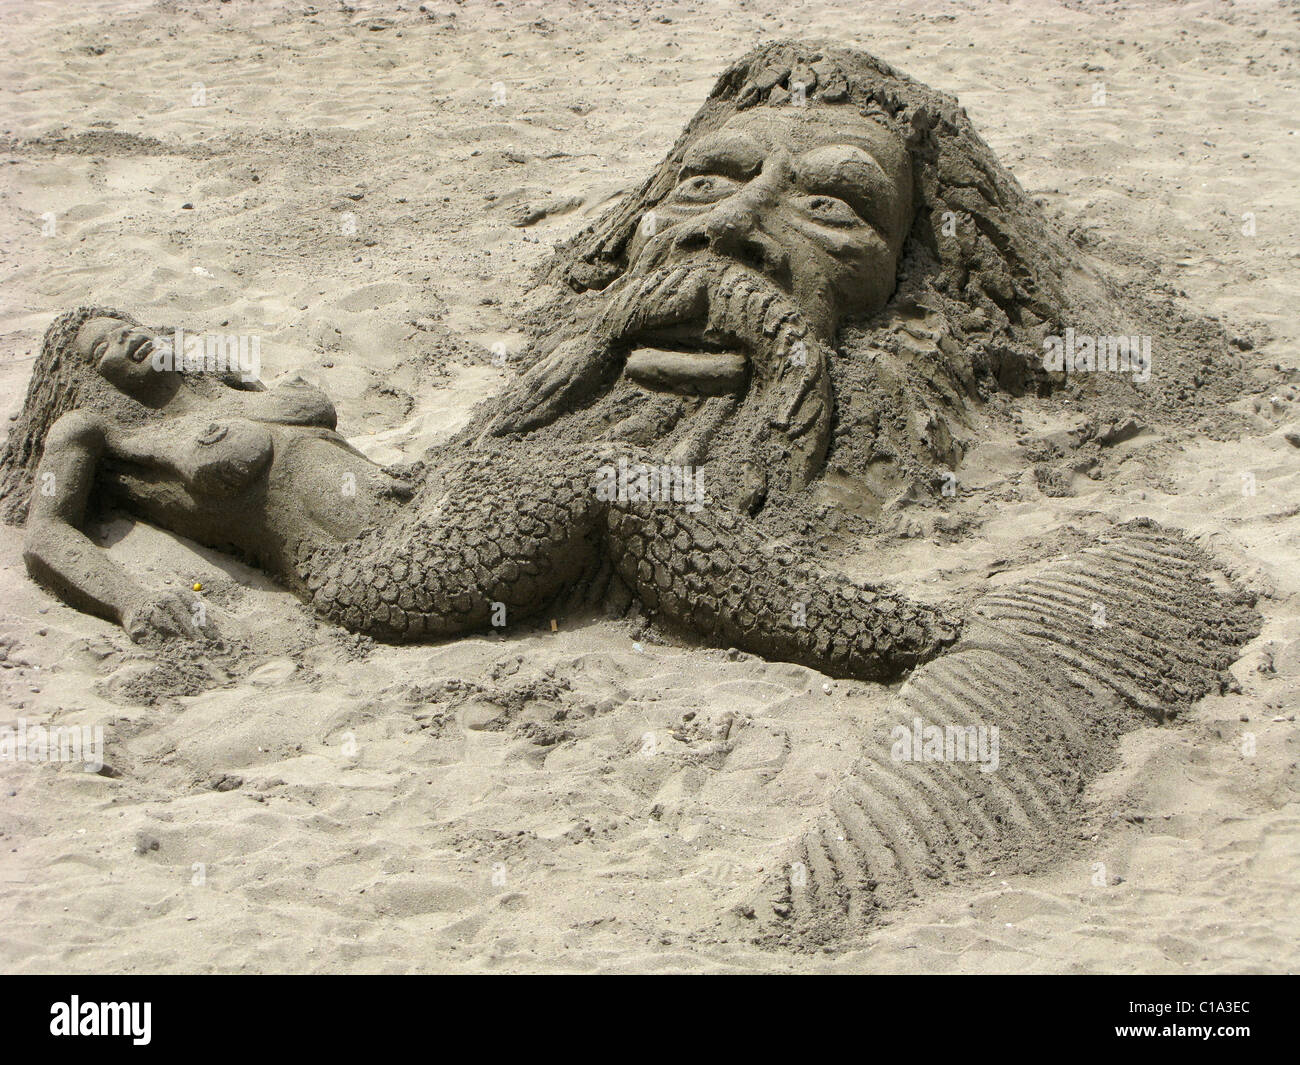 Neptune and mermaid in sand Stock Photo